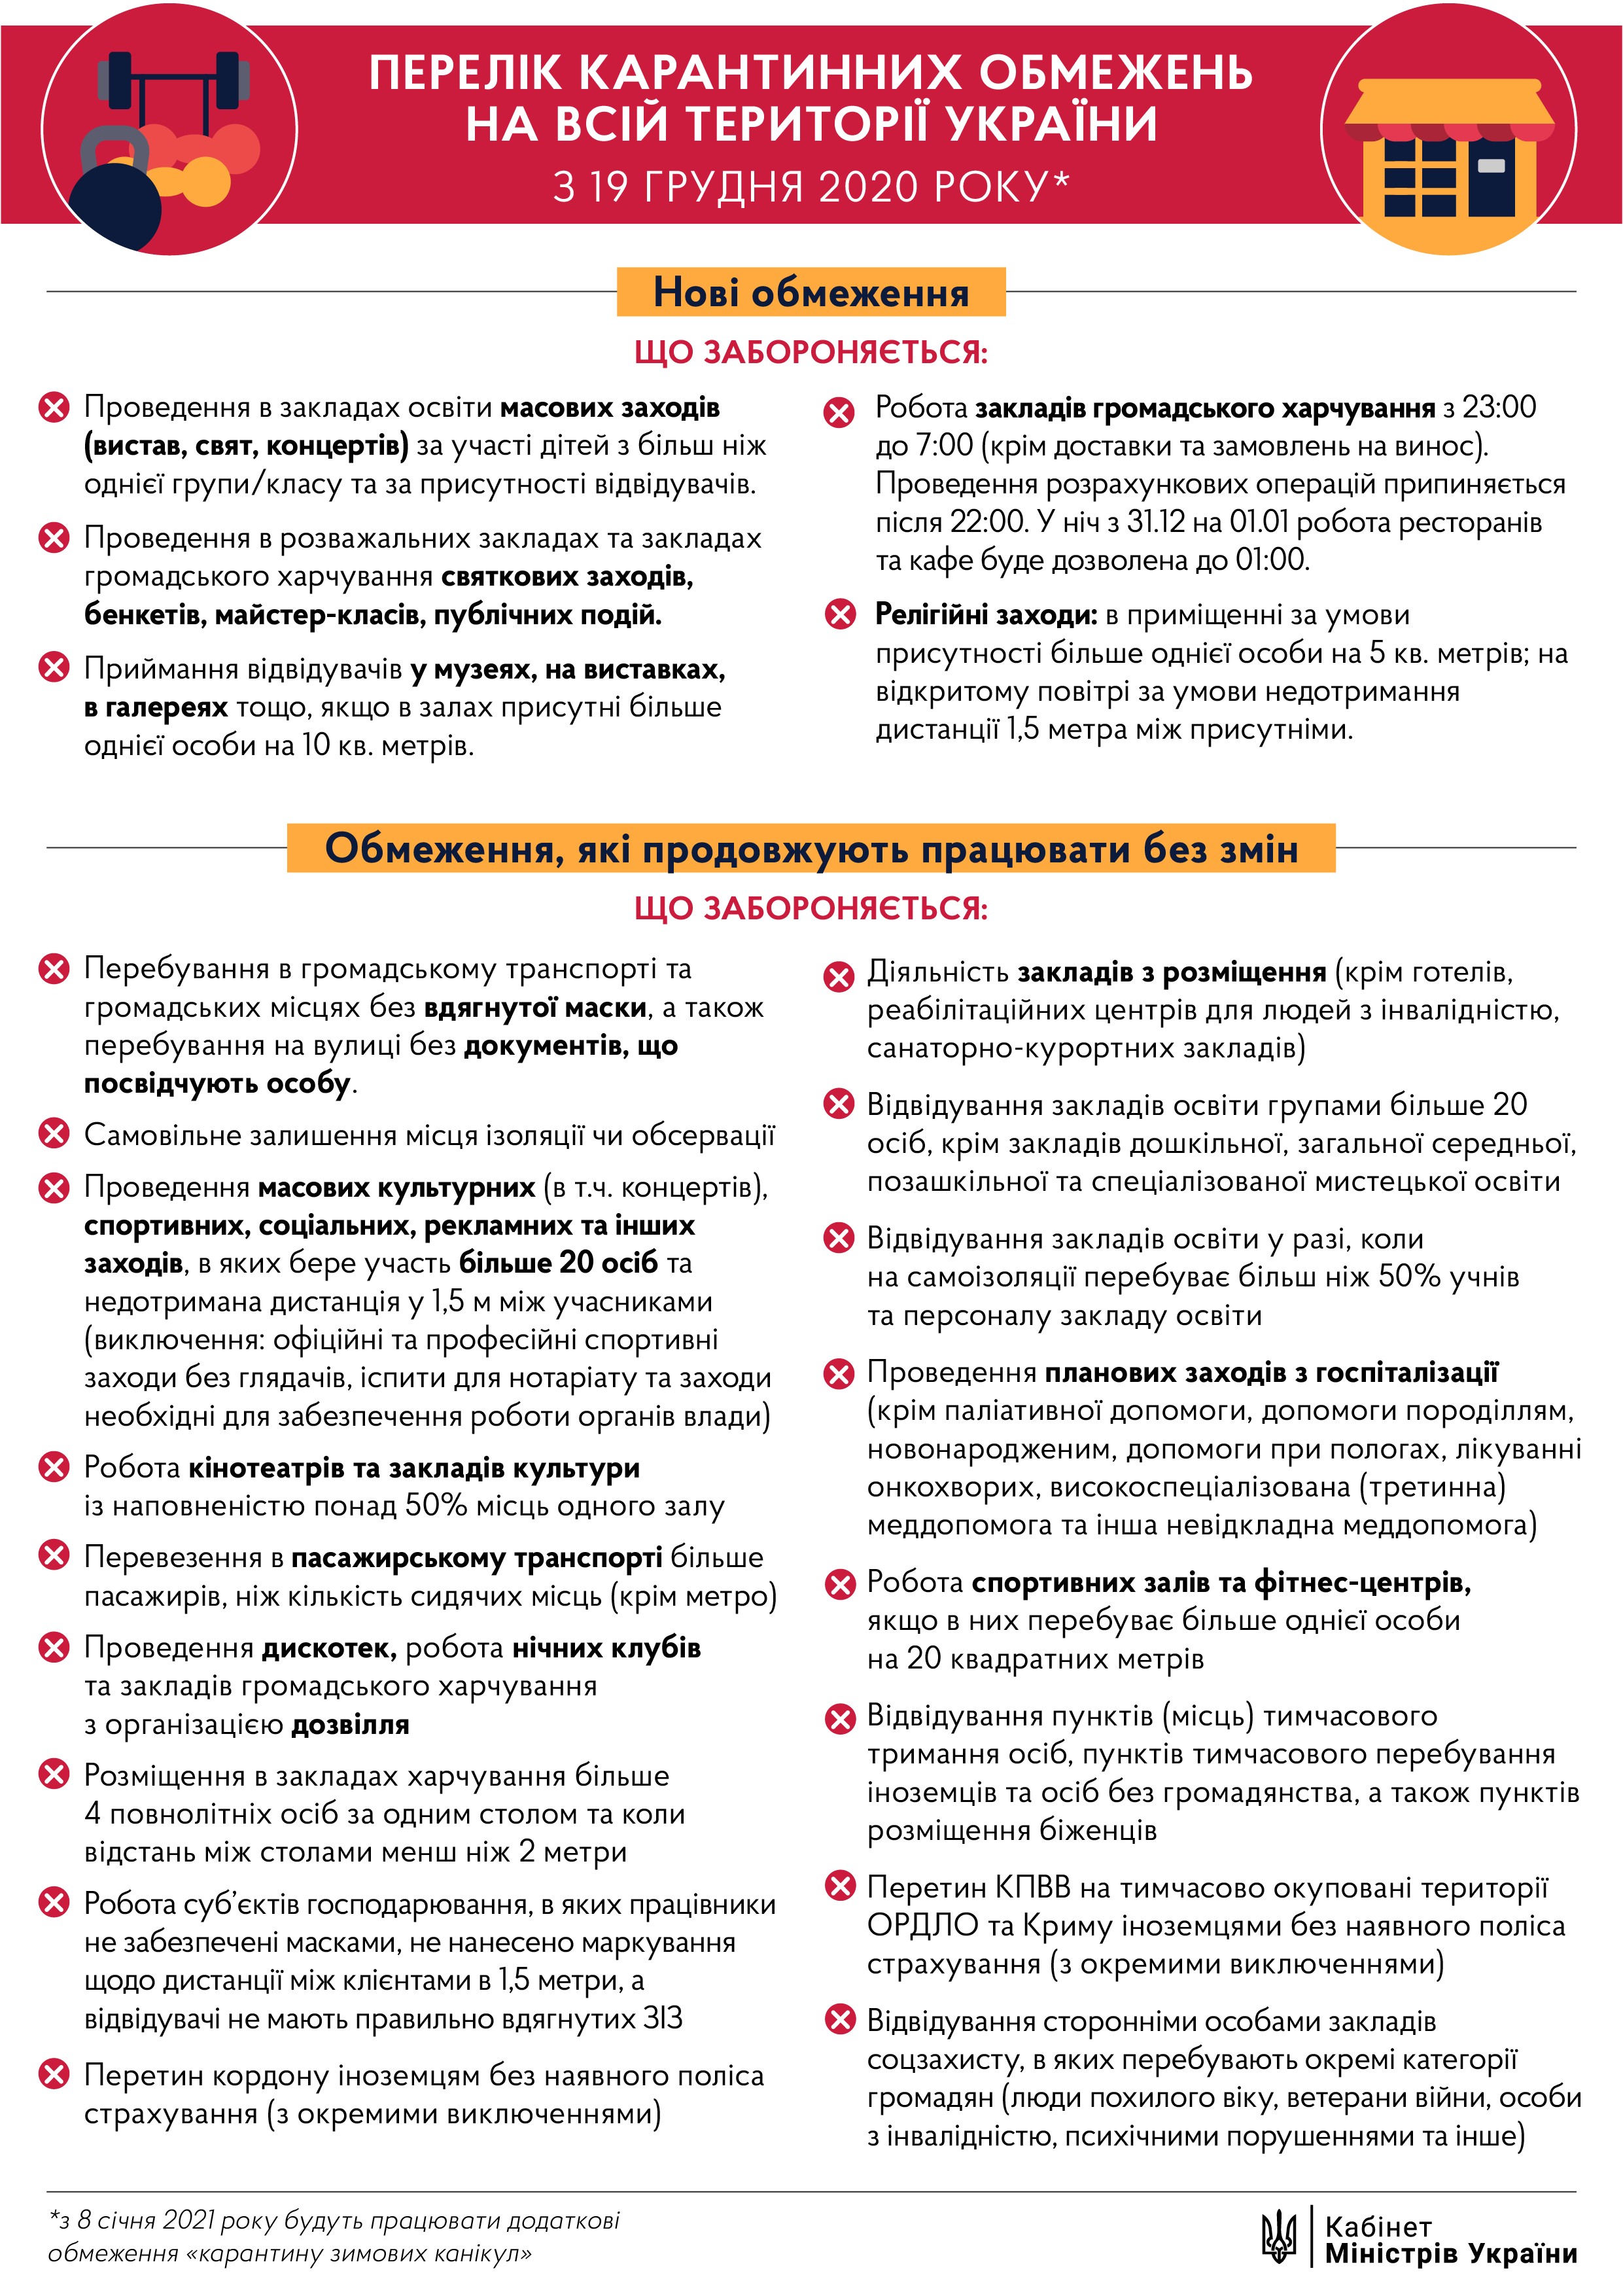 Урядом запроваджено перелік карантинних обмежень, які діятимуть з 19 грудня 2020 року на всій території України !